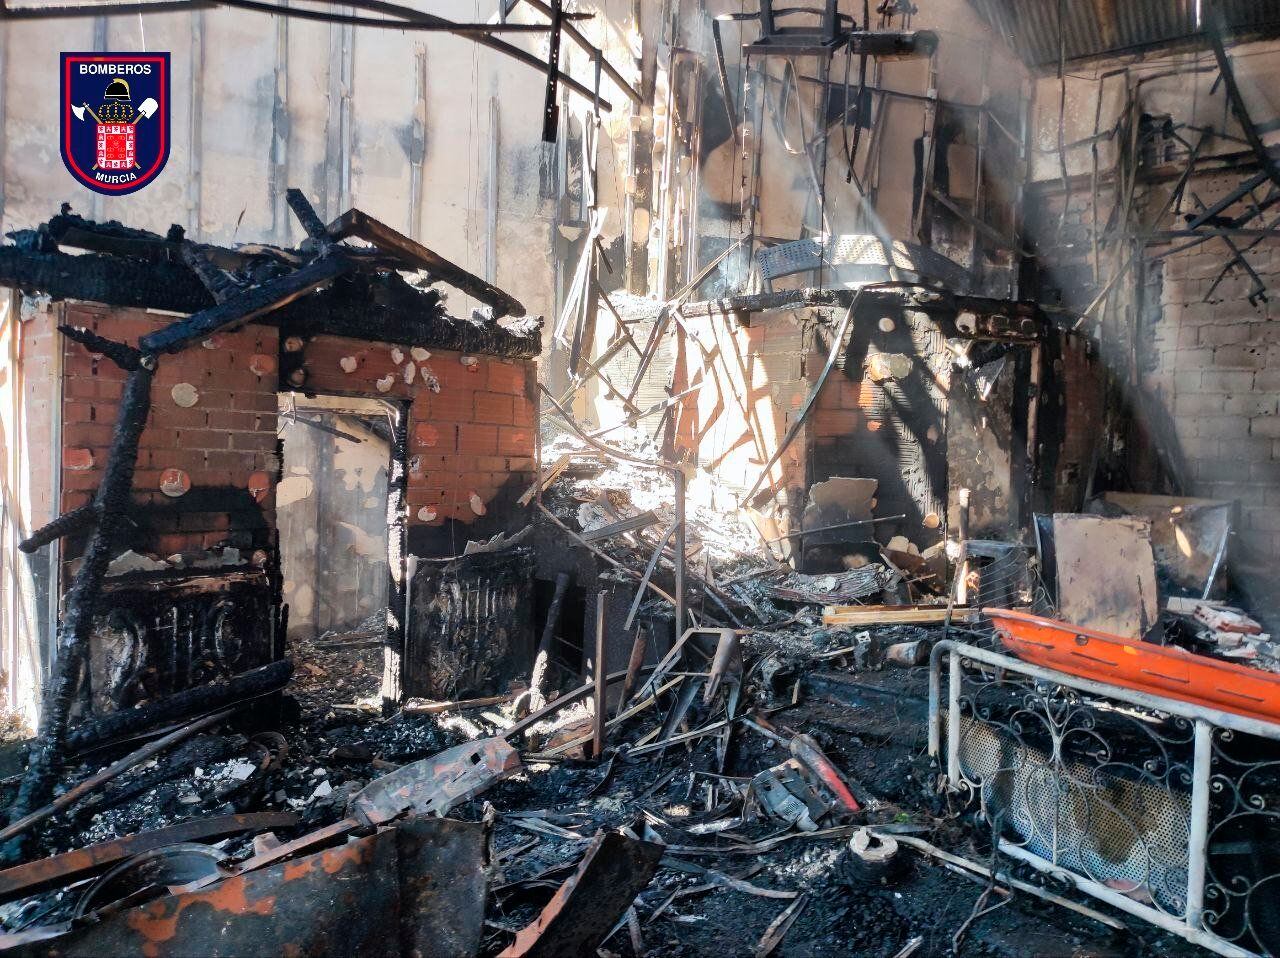 Imagen facilitada por los Bomberos de Murcia donde se muestra el interior de una de las discotecas afectadas por el incendio.